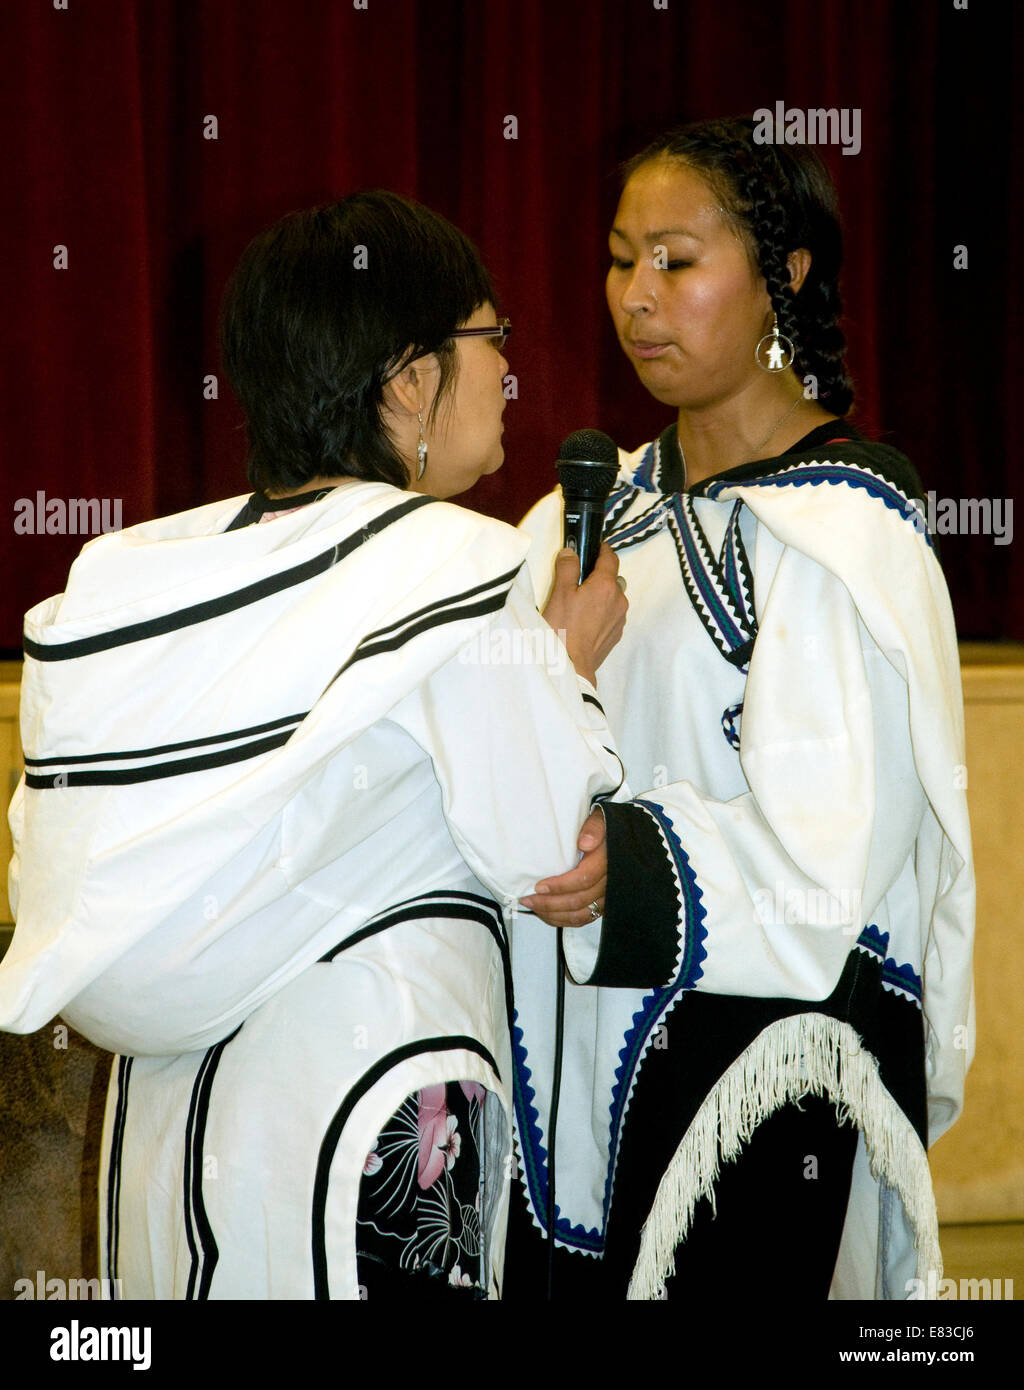 Deux face-à-face les femmes inuites, donner un affichage de la chant de gorge inuit distinctif. Il y a rire quand on abandonne. Banque D'Images